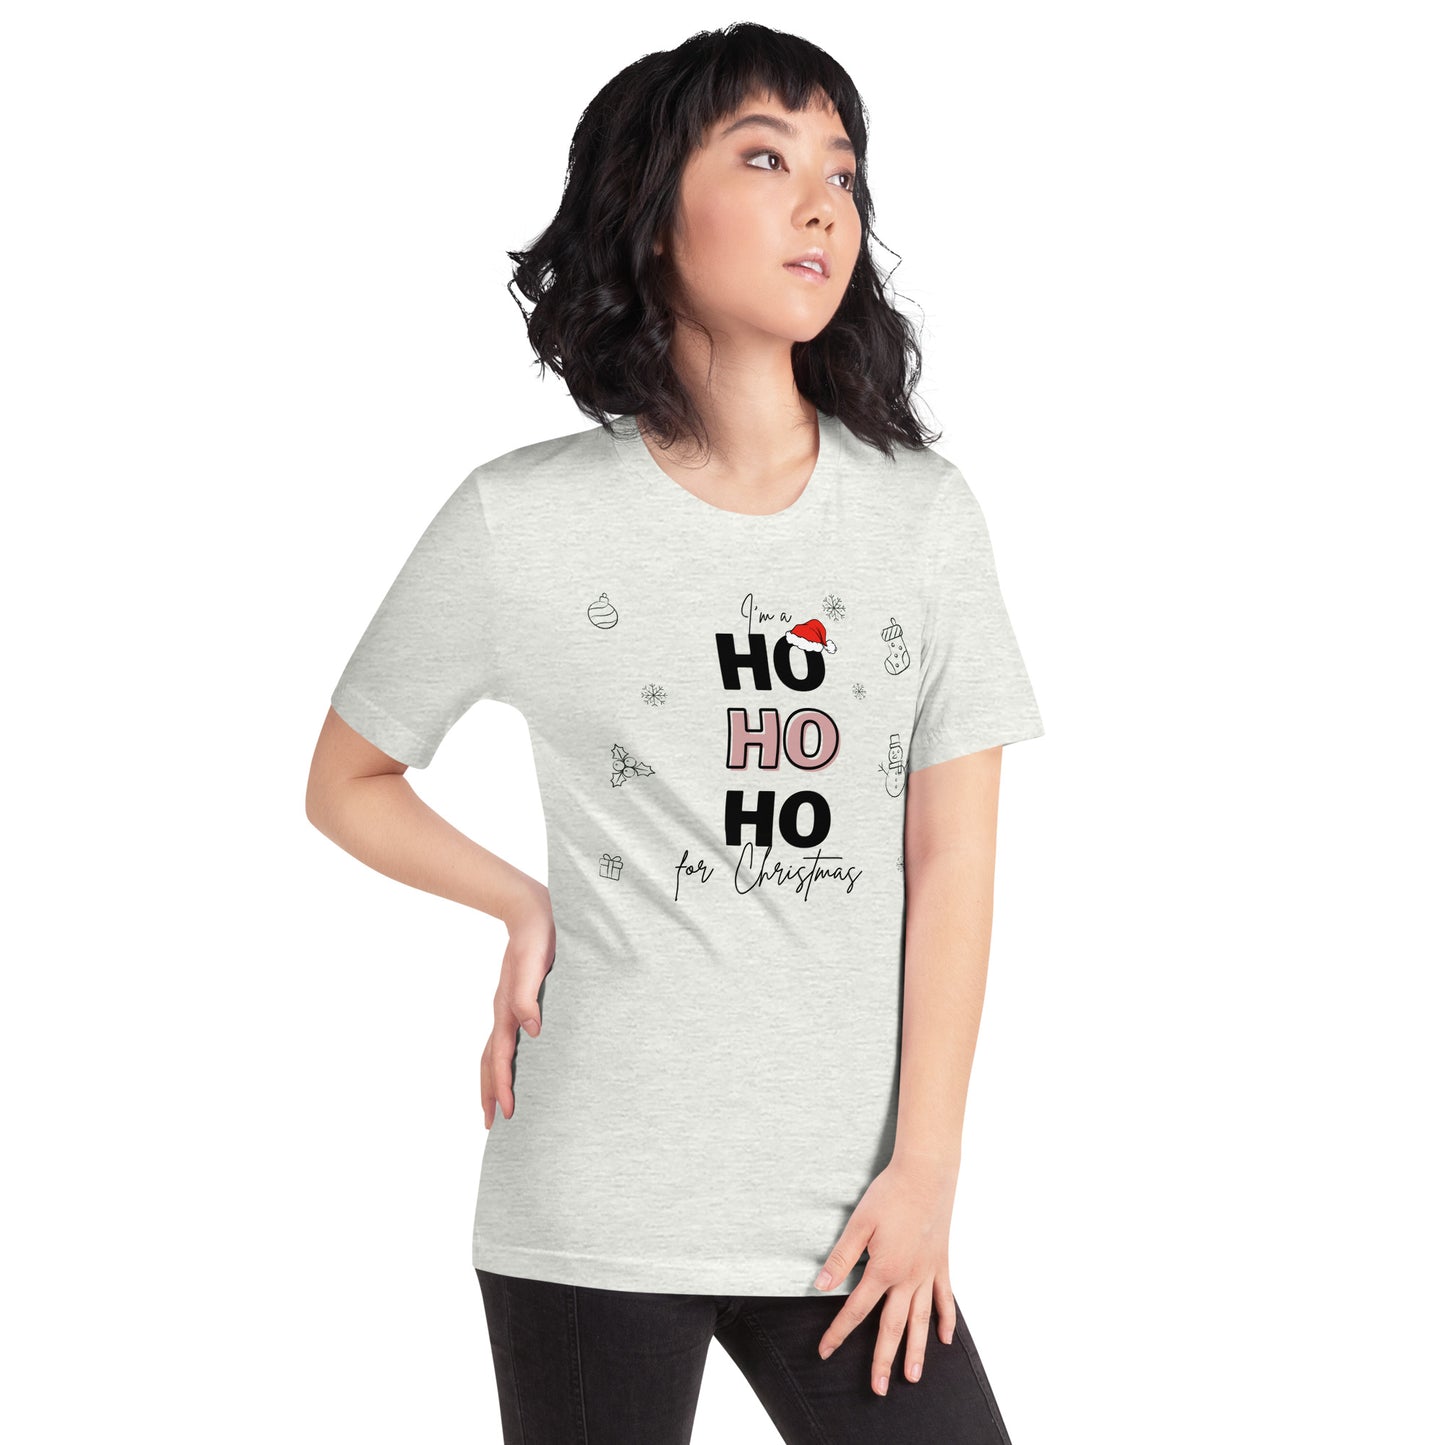 I'm a HO HO HO For Christmas - Black / Pink